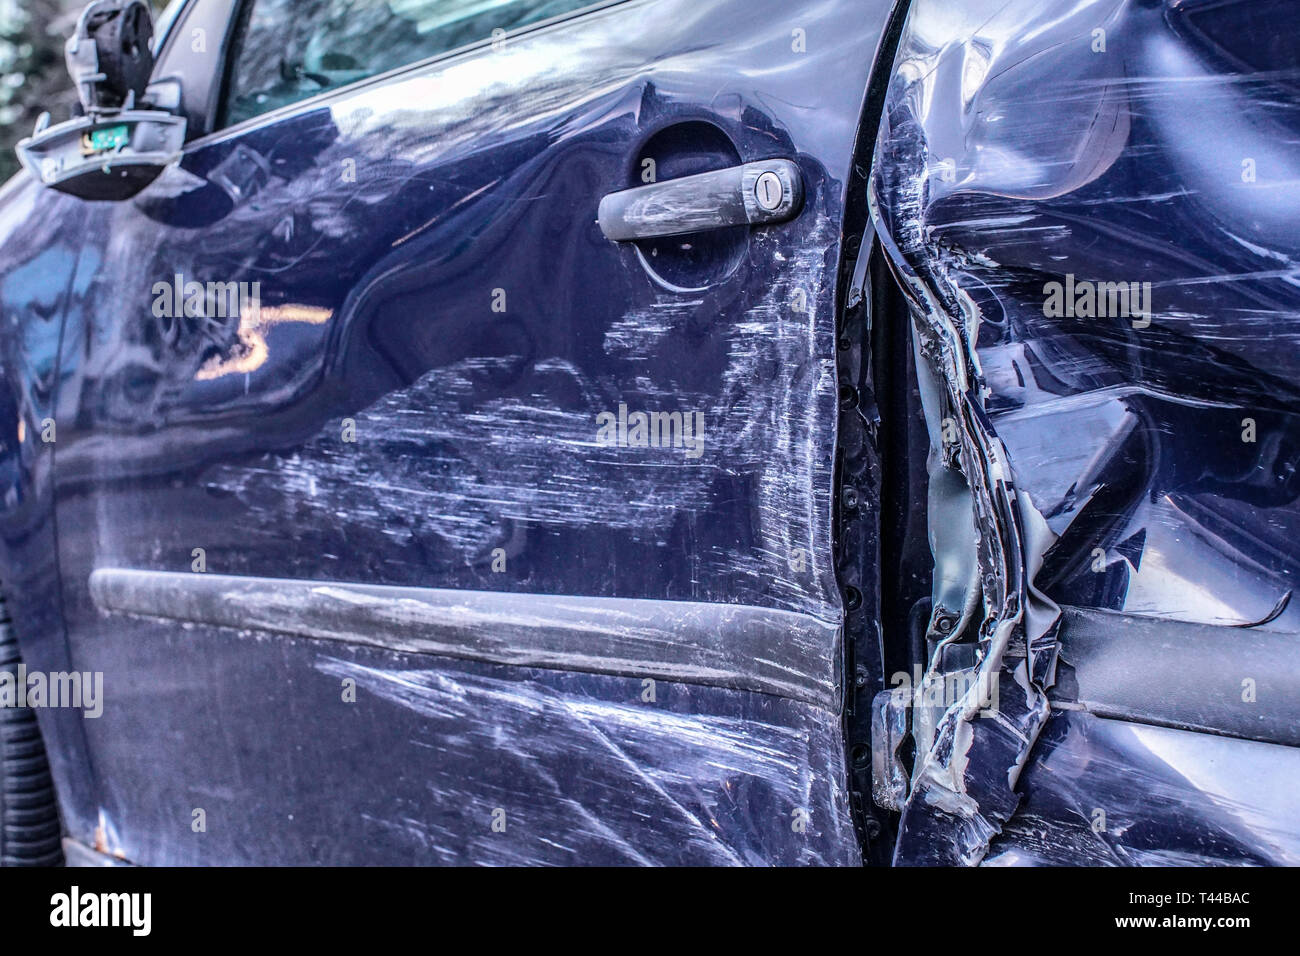 Détail de voiture après accident, des plaques de métal déformé après l'accident a frappé. Banque D'Images